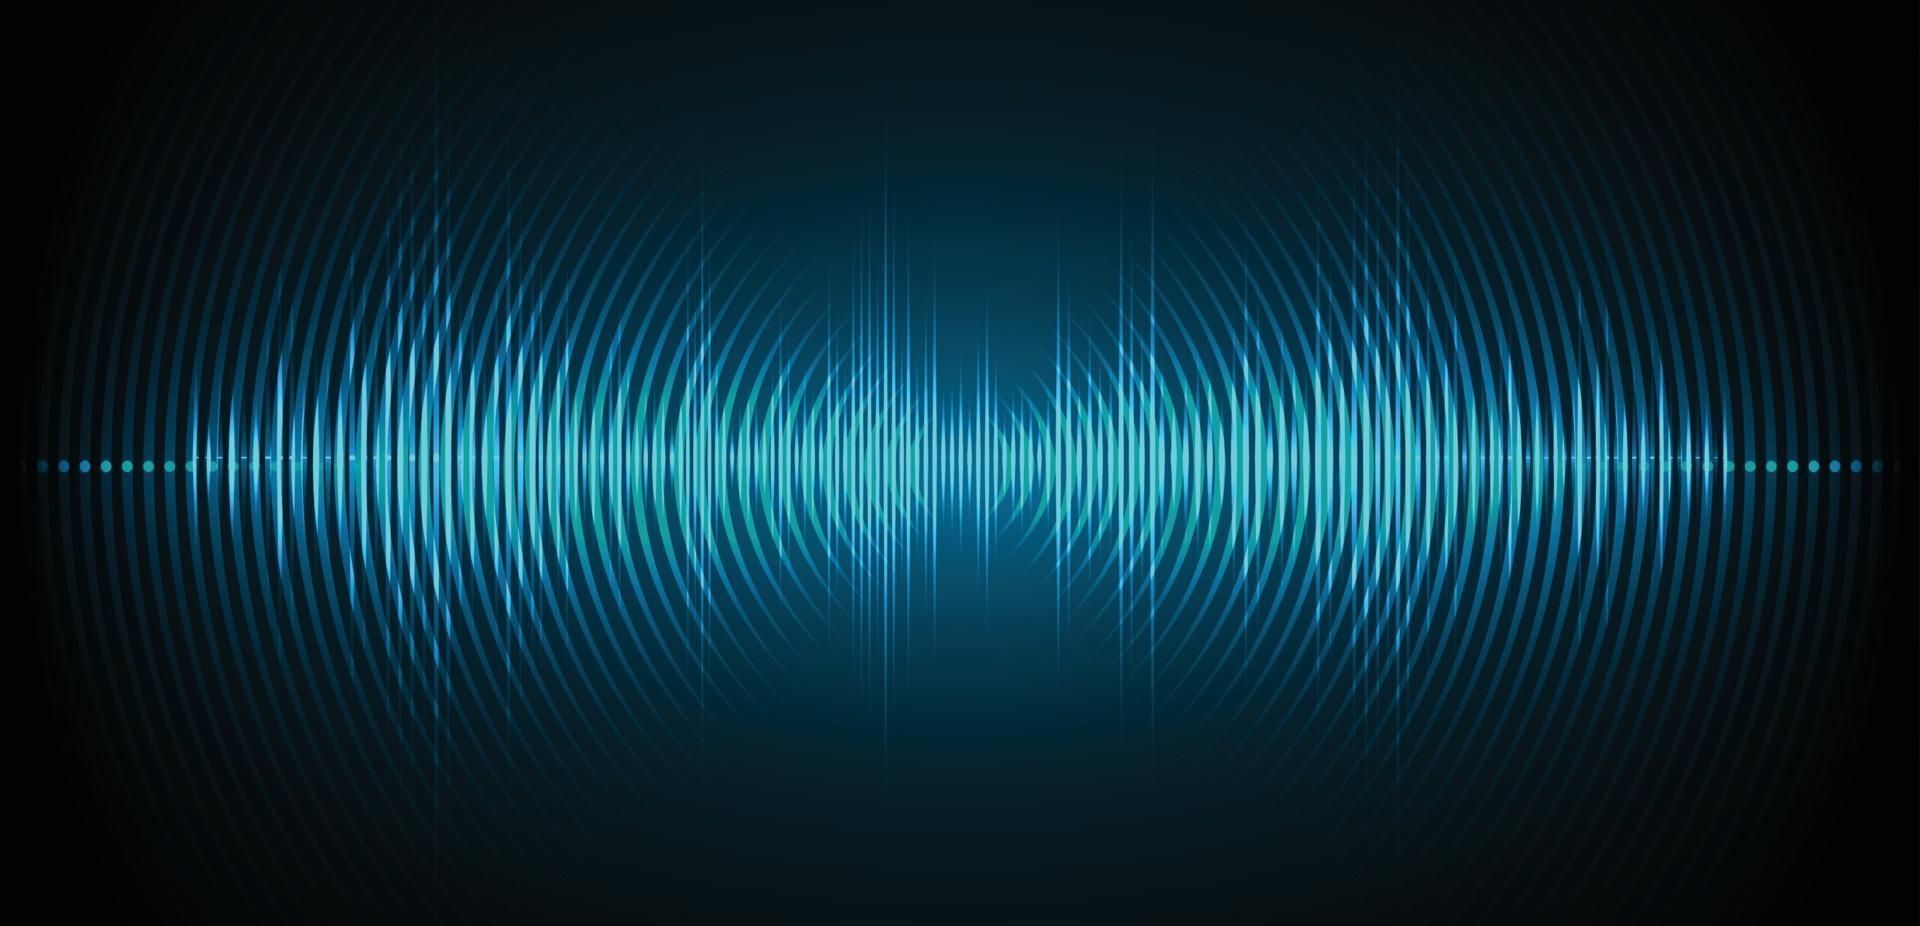 Sound waves oscillating dark light vector